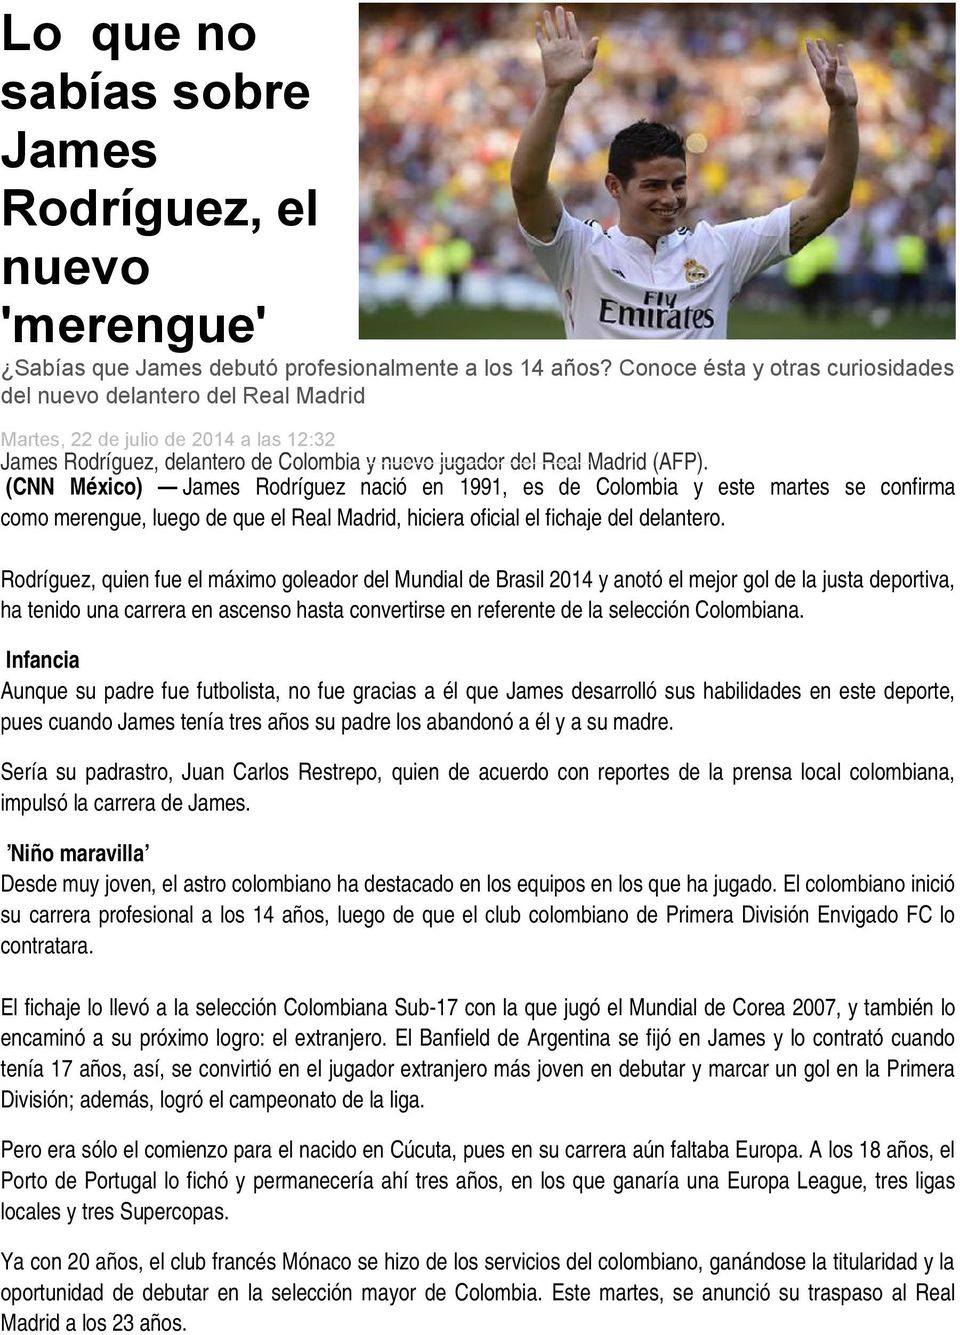 (CNN México) James Rodríguez nació en 1991, es de Colombia y este martes se confirma como merengue, luego de que el Real Madrid, hiciera oficial el fichaje del delantero.